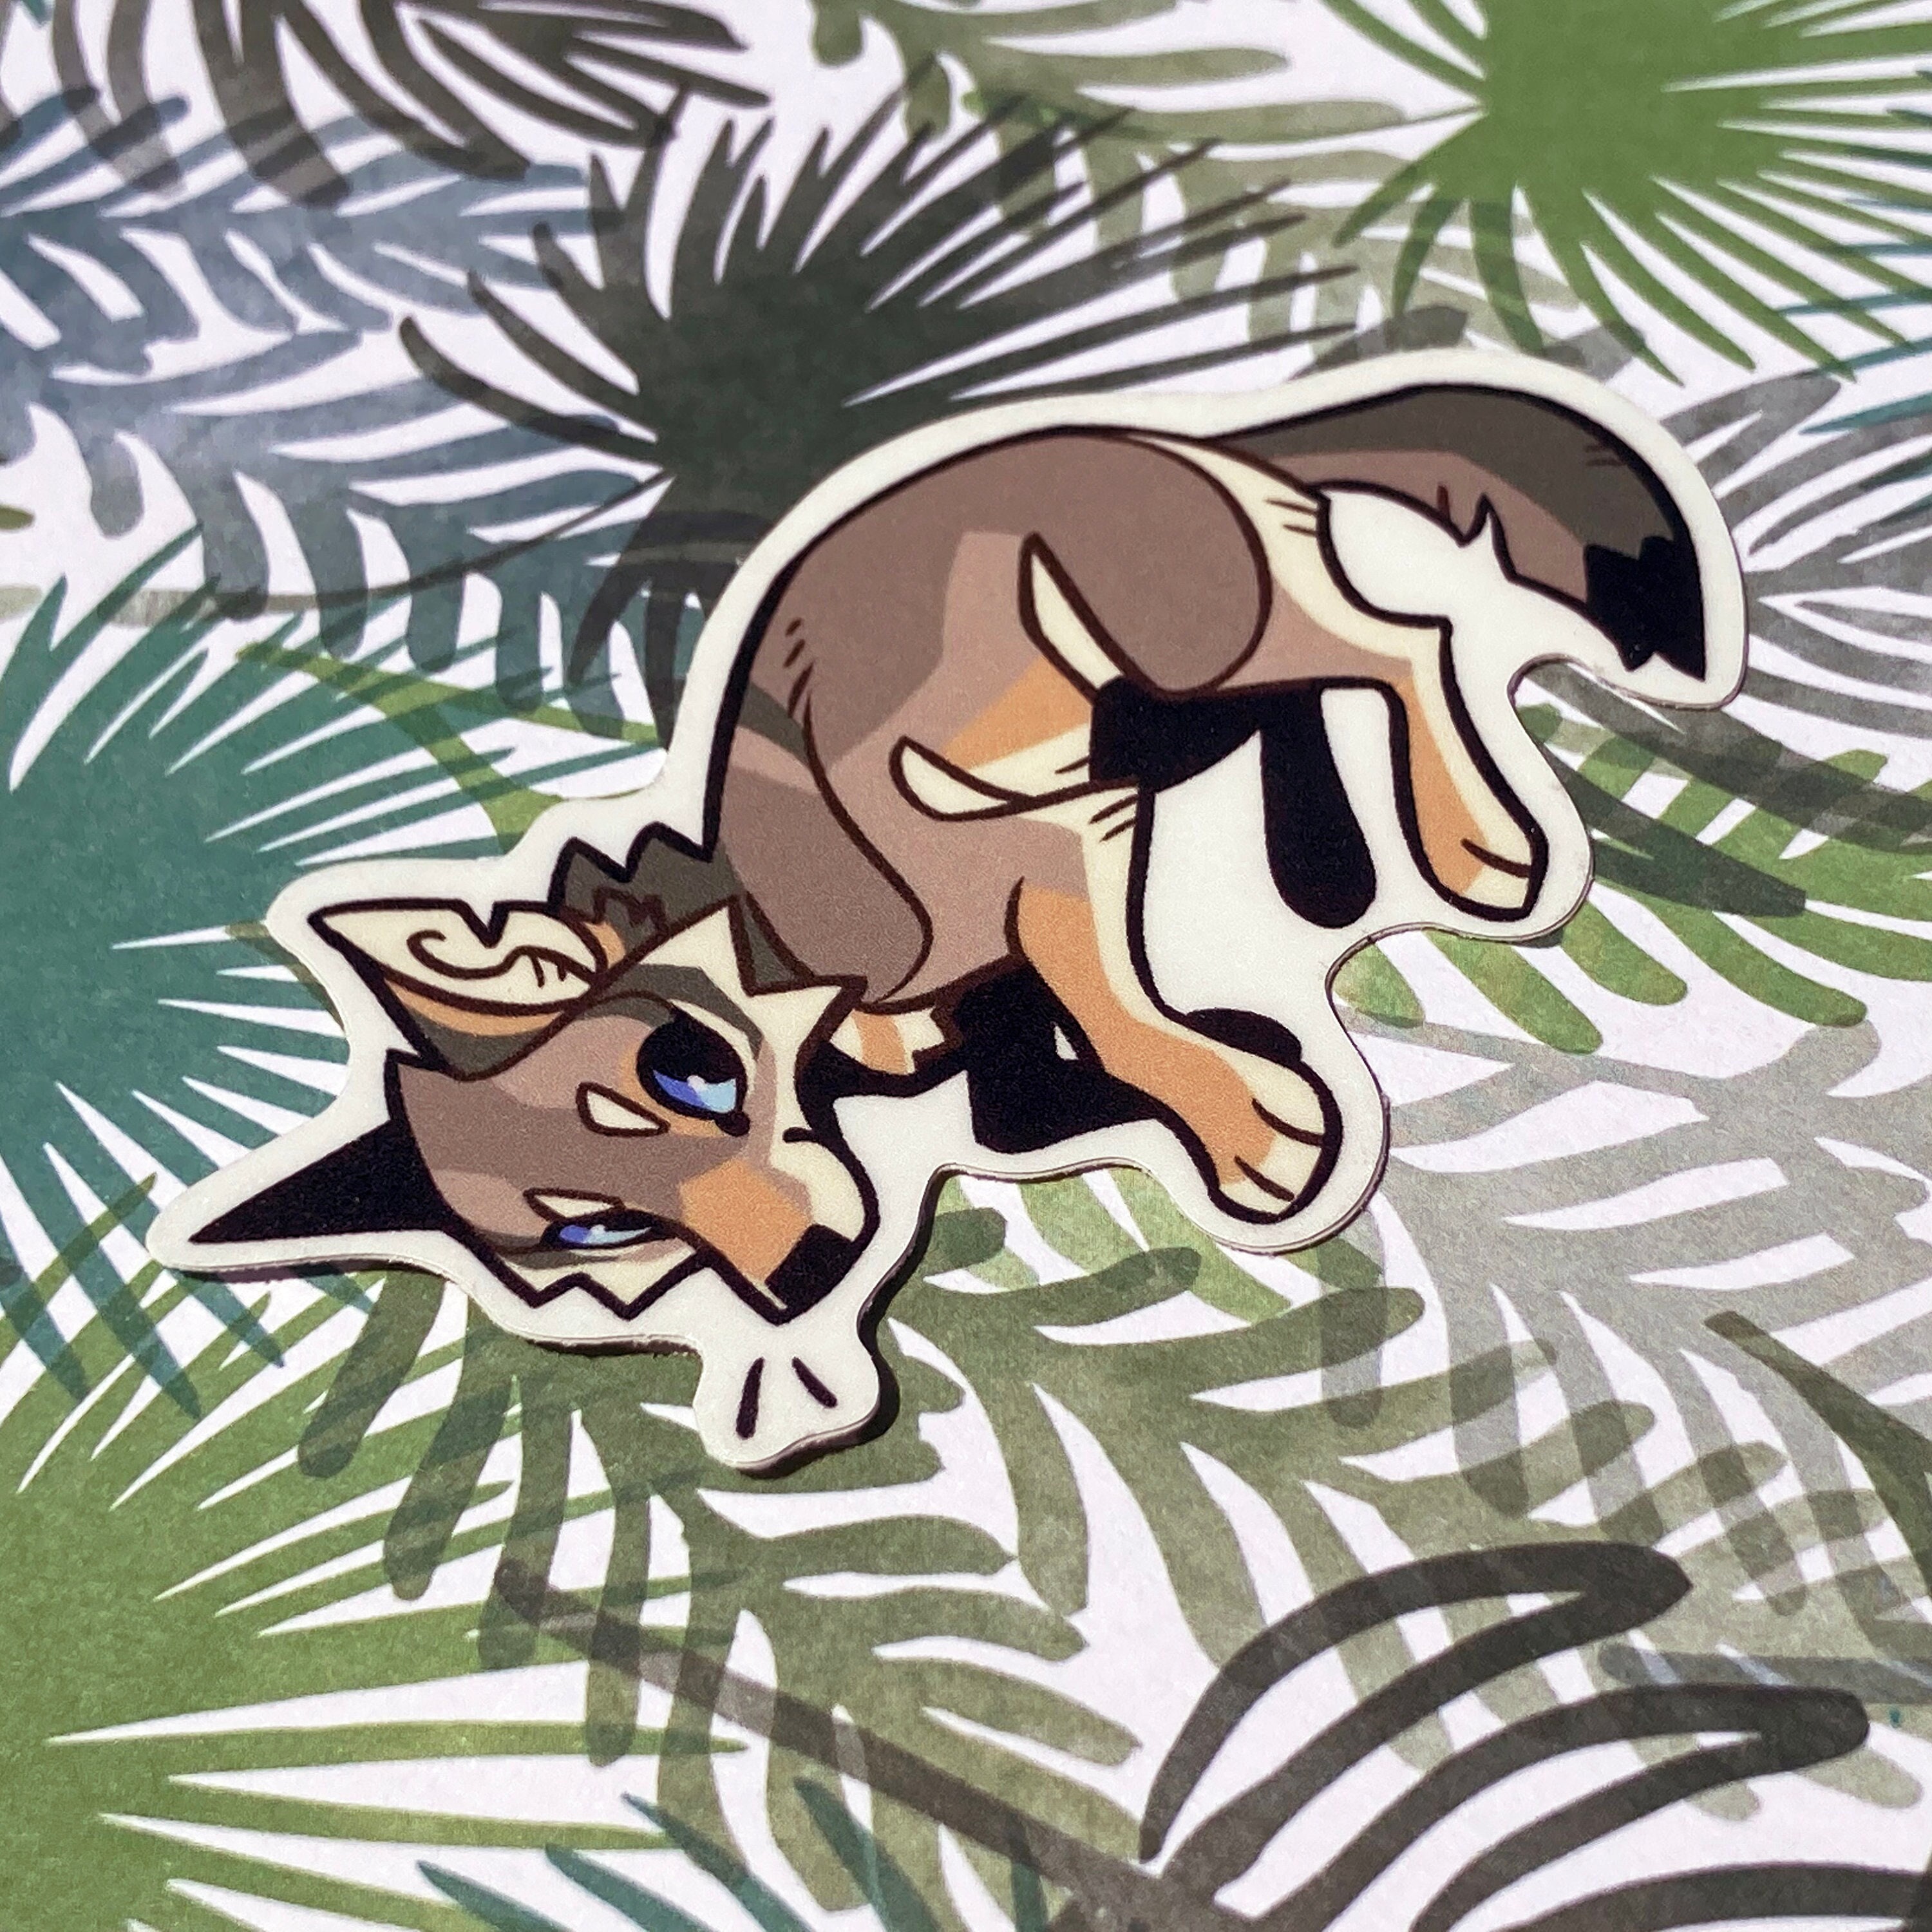 Canine/feline Sticker Sheets 